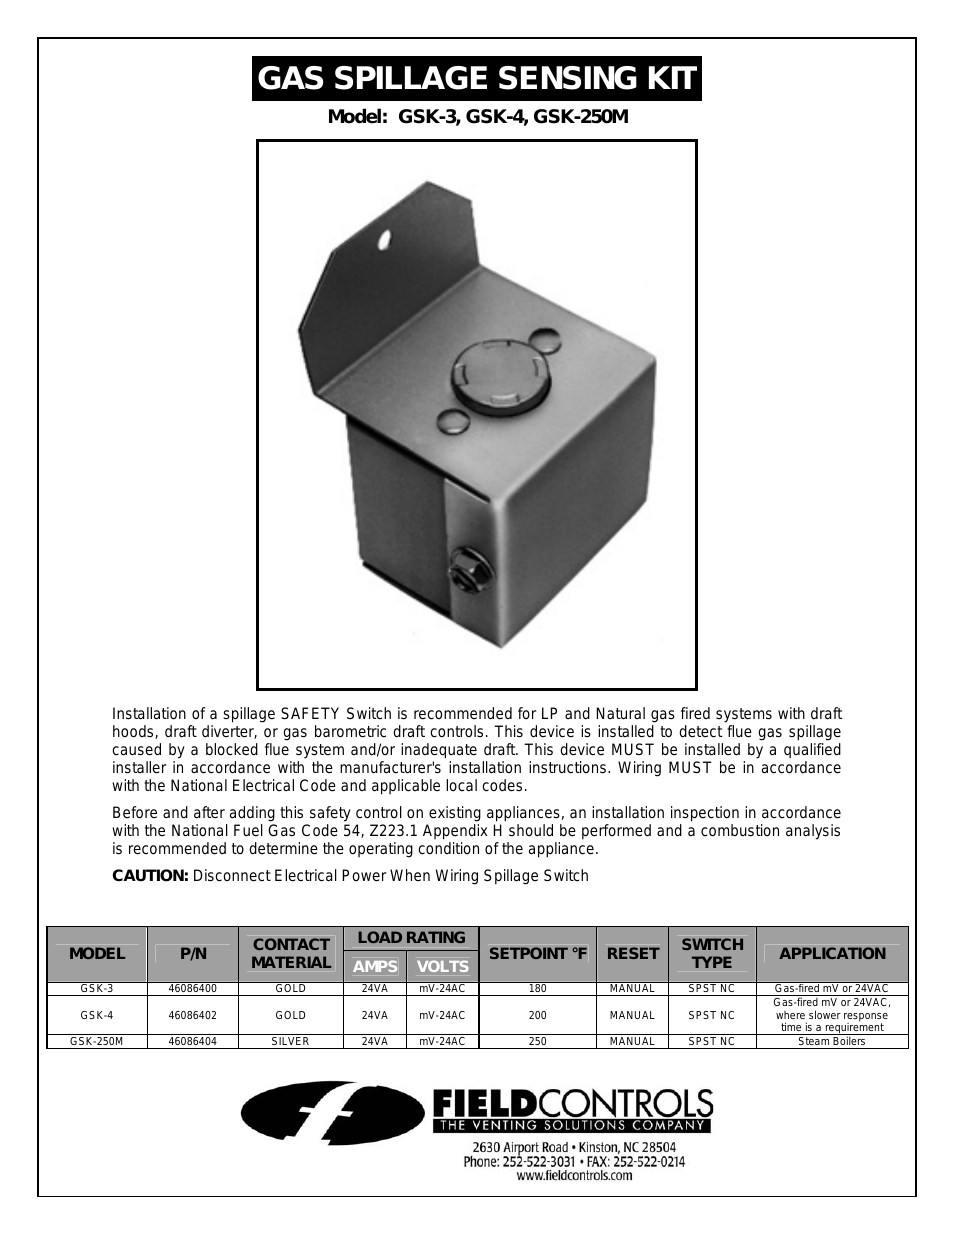 Gas Spillage Sensing Kit GSK-3